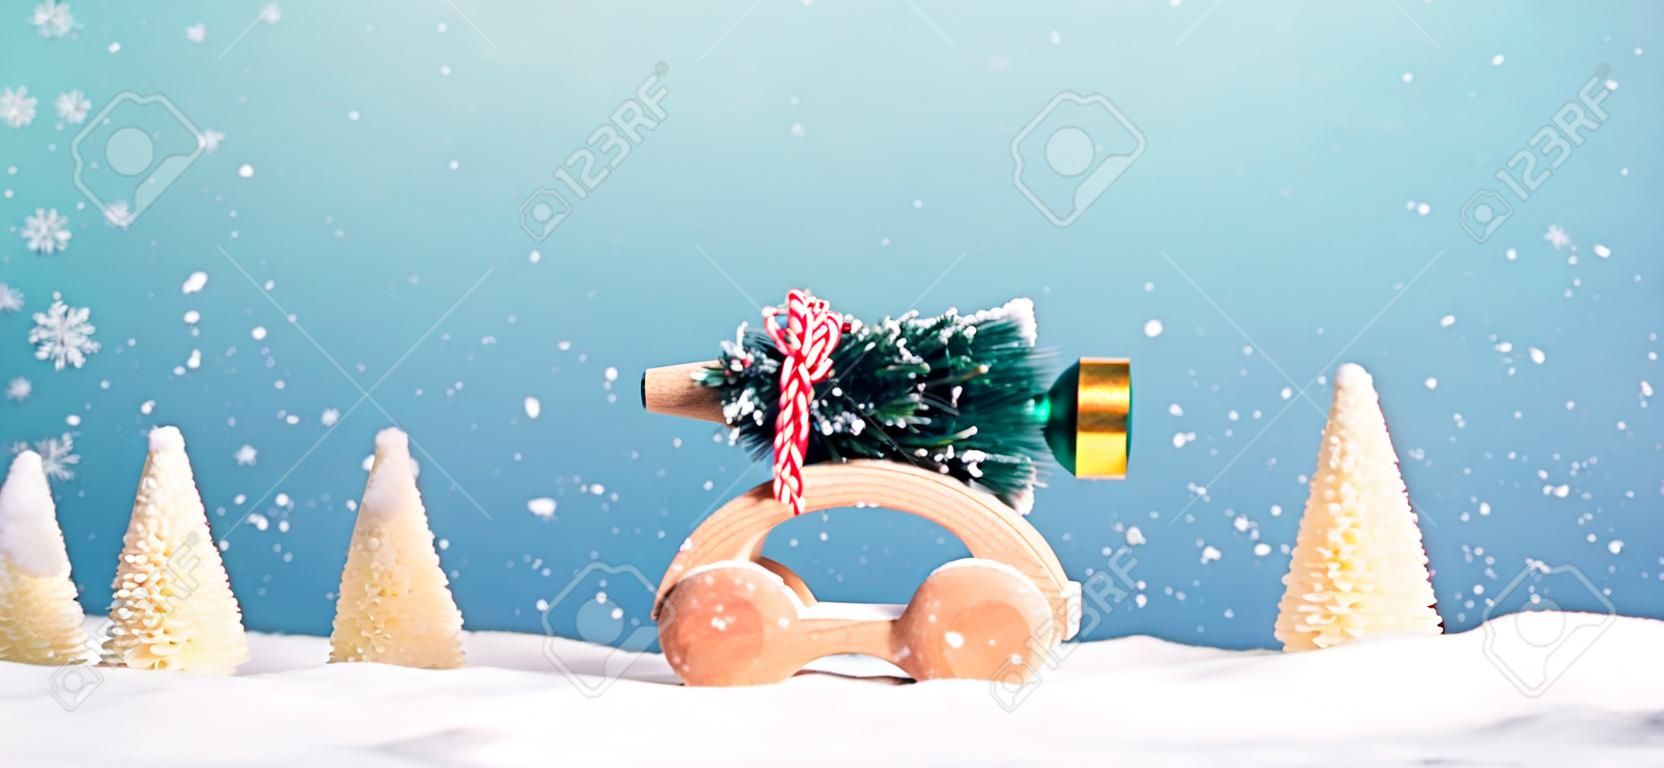 Hölzernes Miniaturauto, das einen Weihnachtsbaum auf einem blauen Hintergrund trägt